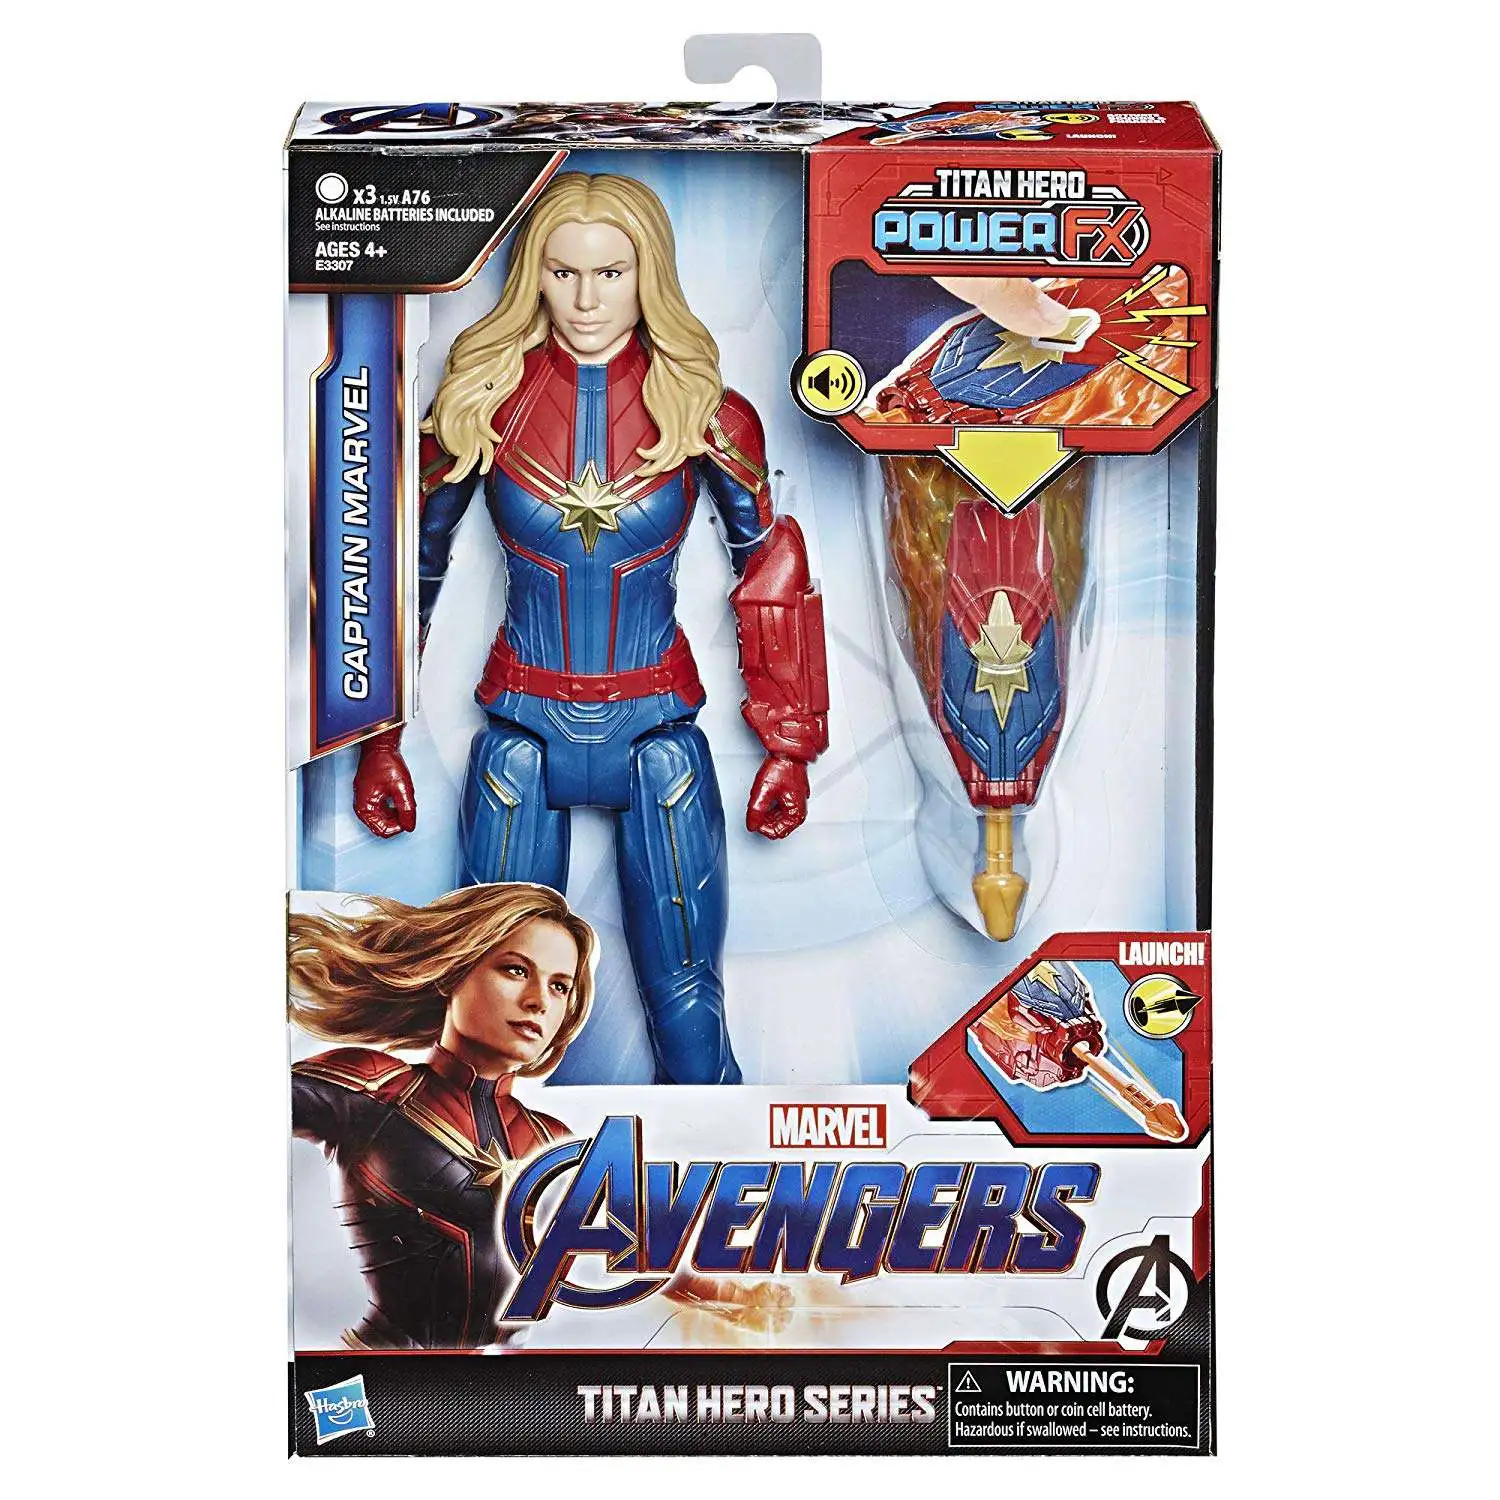 Marvel Avengers Titan Hero Series 12-Inch Action Figure Captain Marvel 